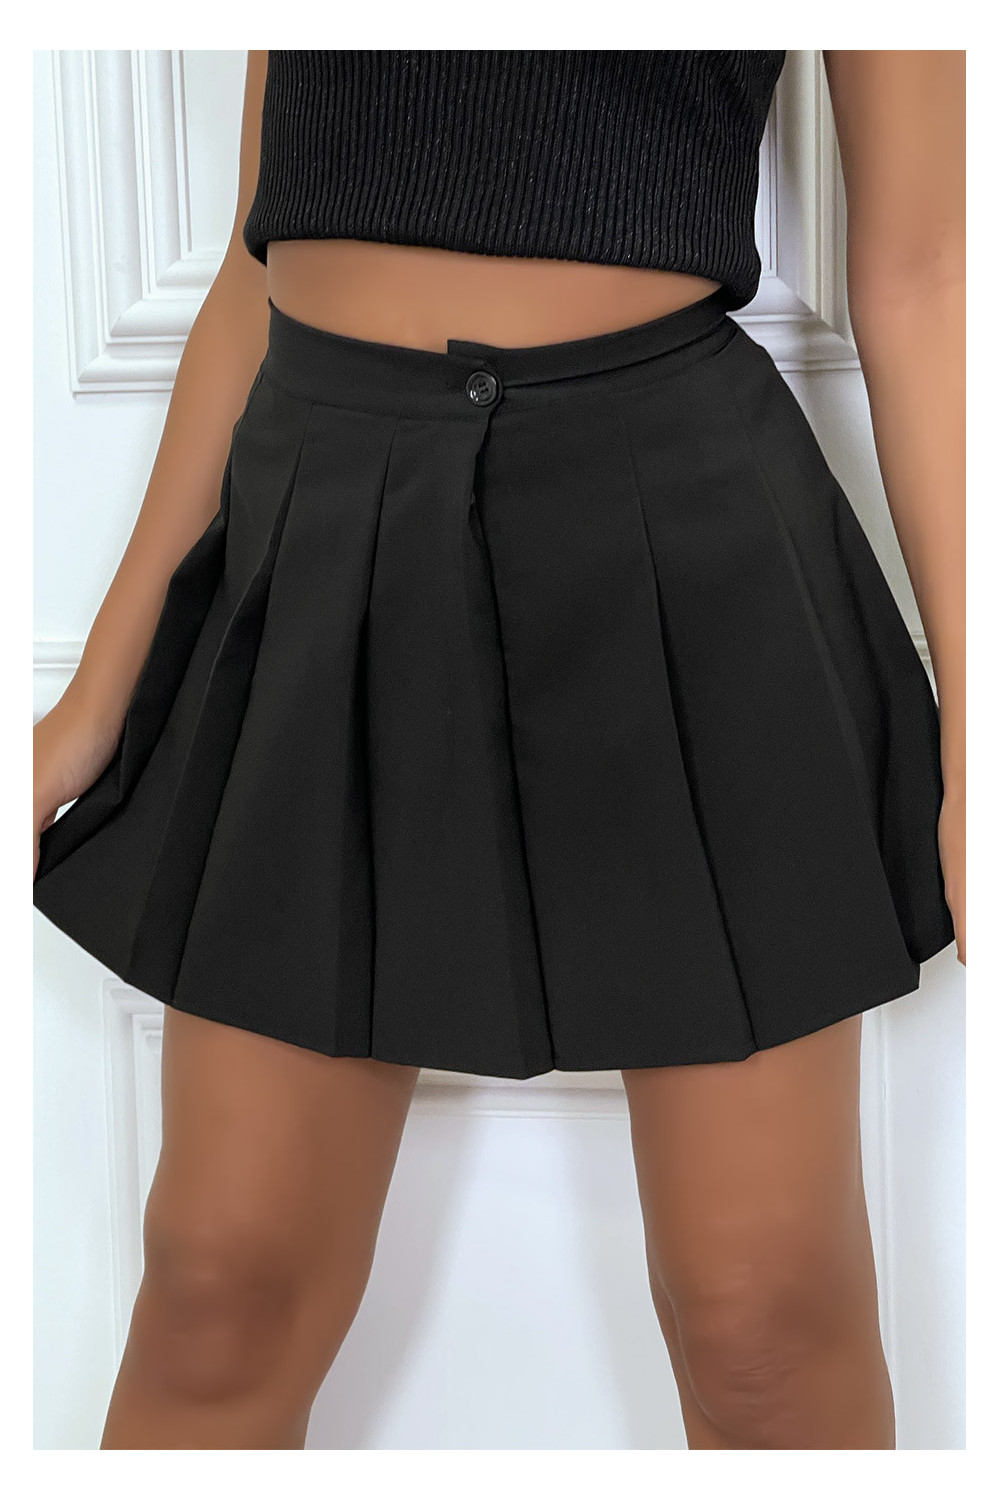 Mujer - Minifalda Plisada Negra Talla S, M, L